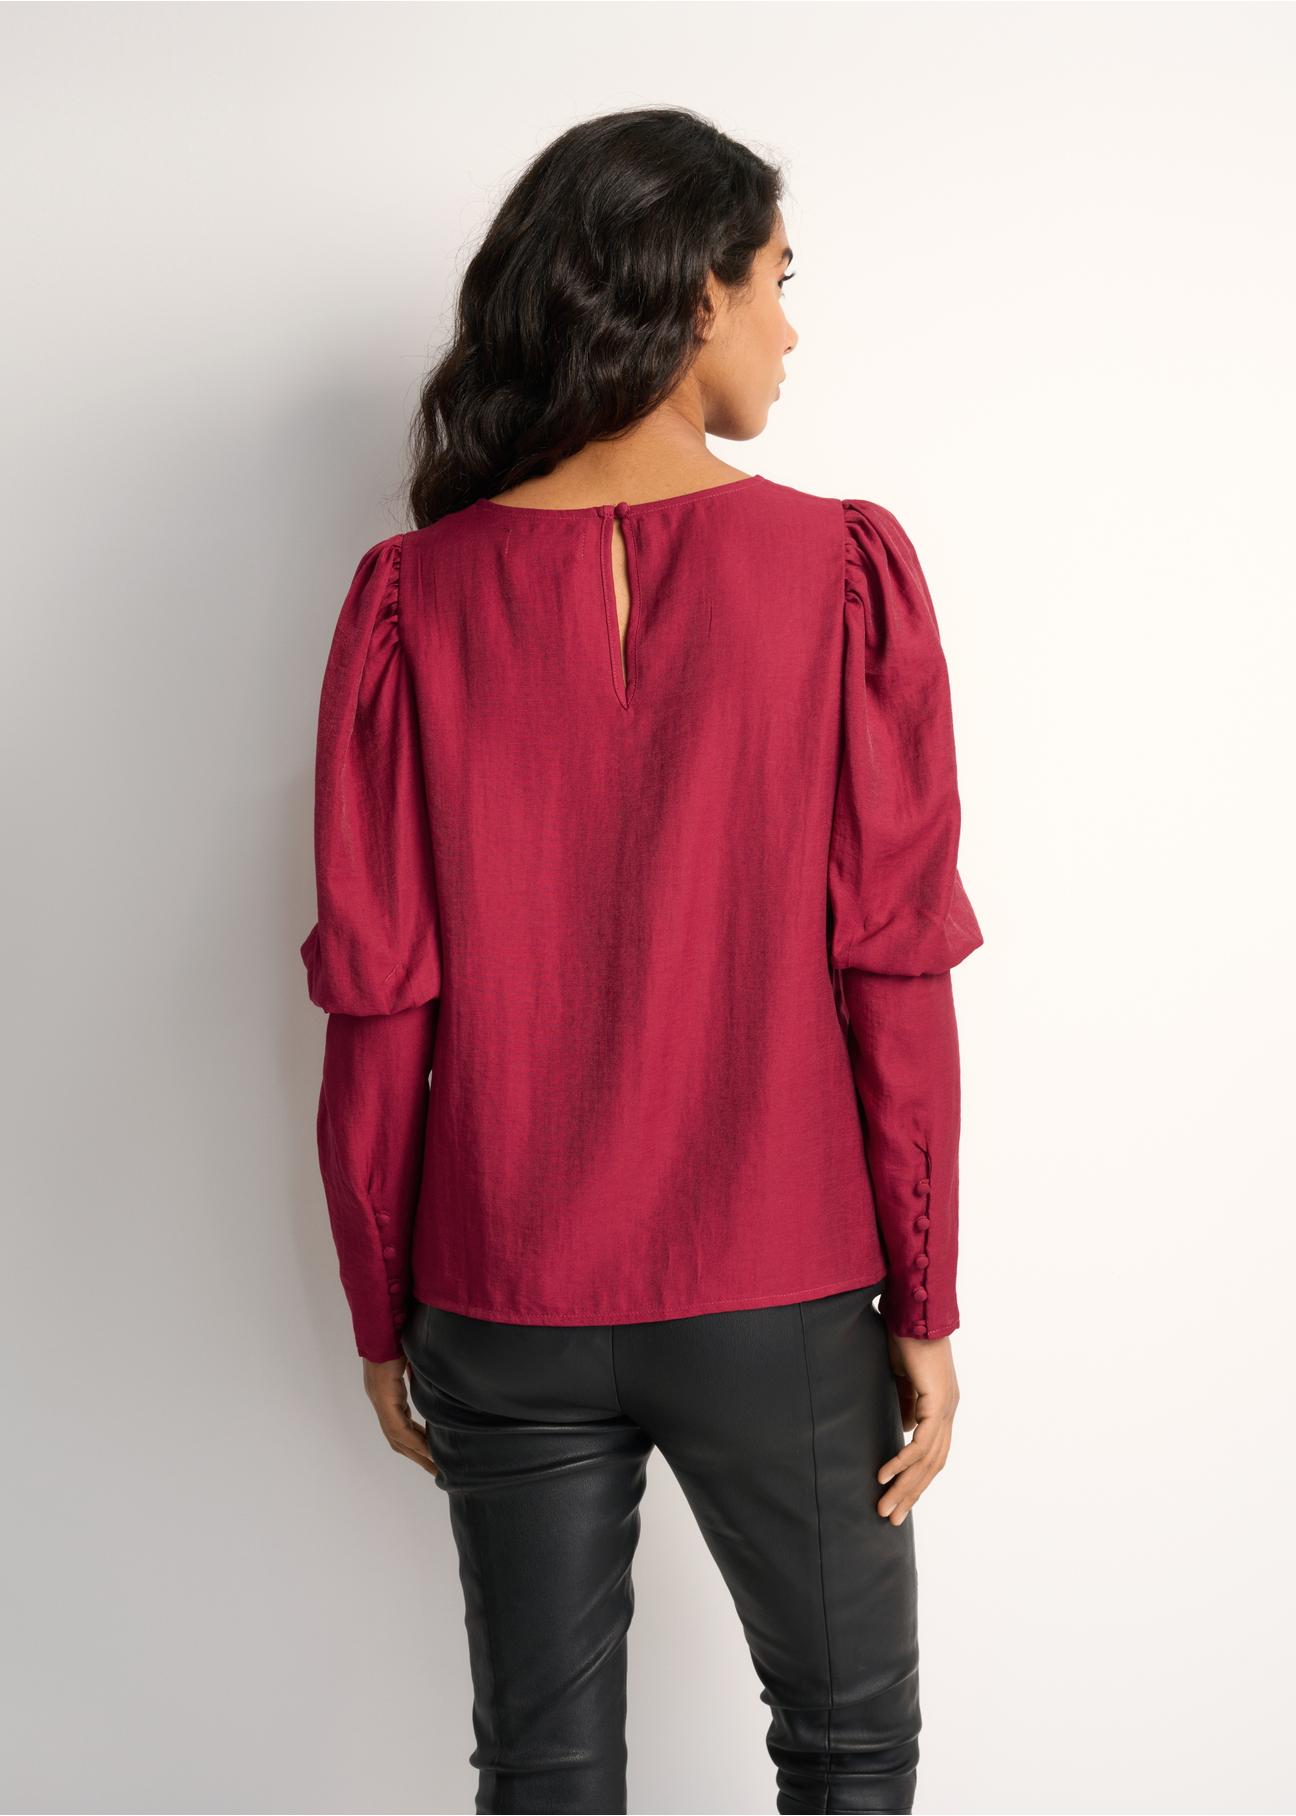 Bordowa bluzka damska z bufkami BLUDT-0154-49(Z22)